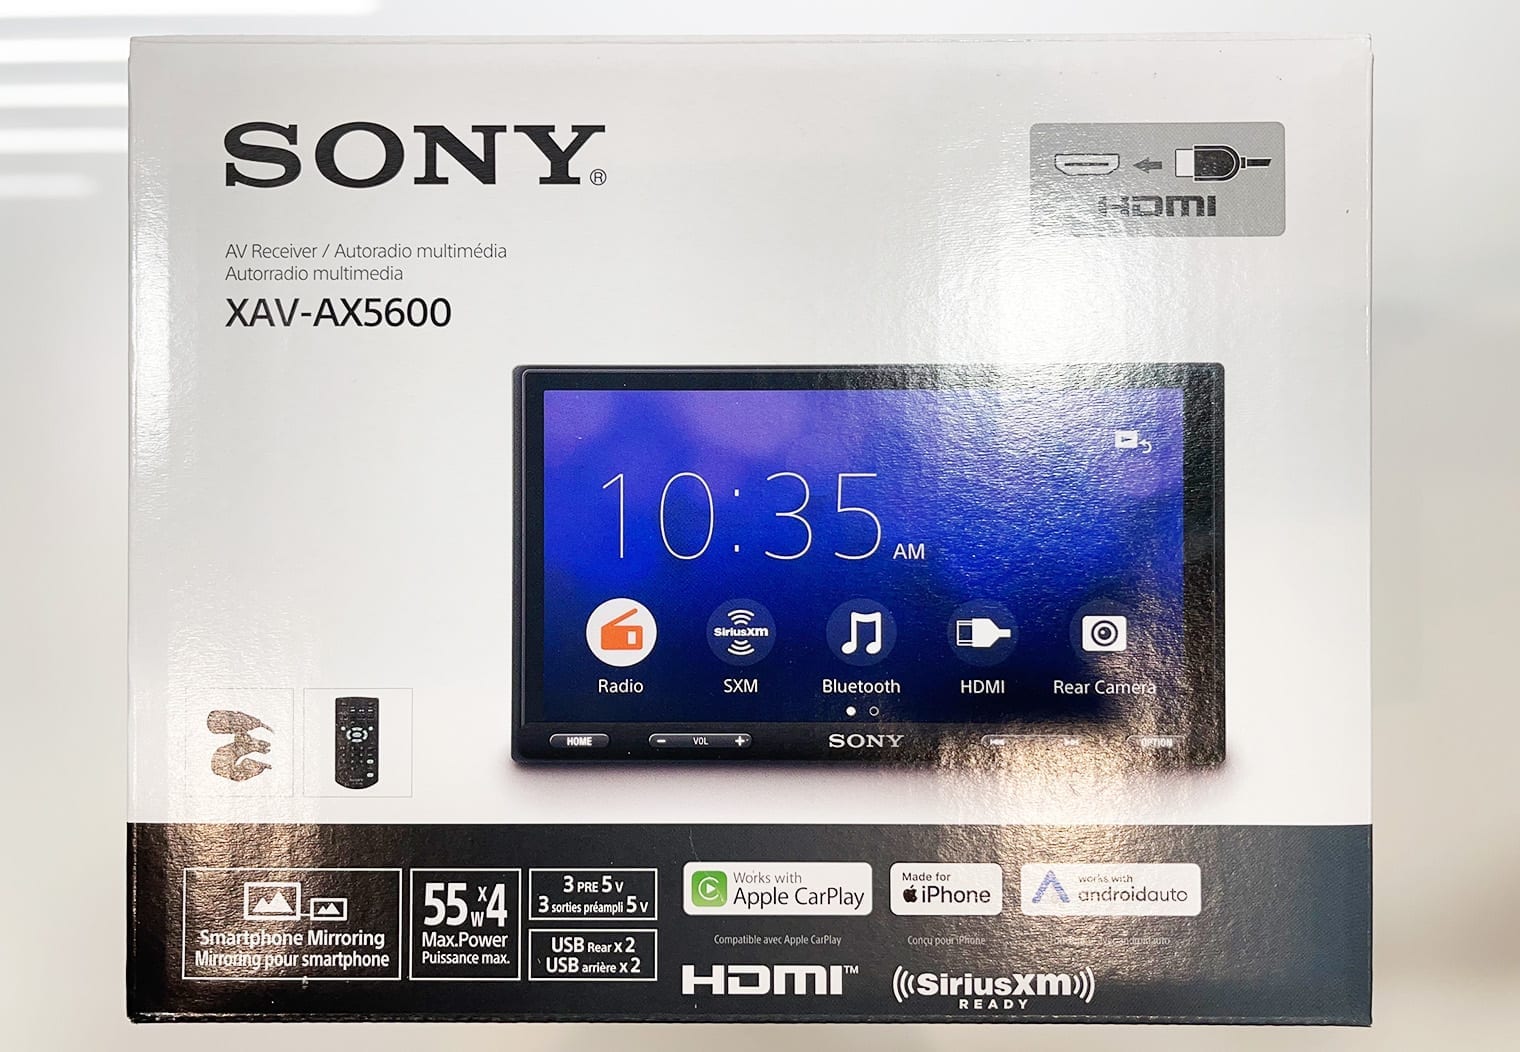 Sony XAV-AX5600 box front